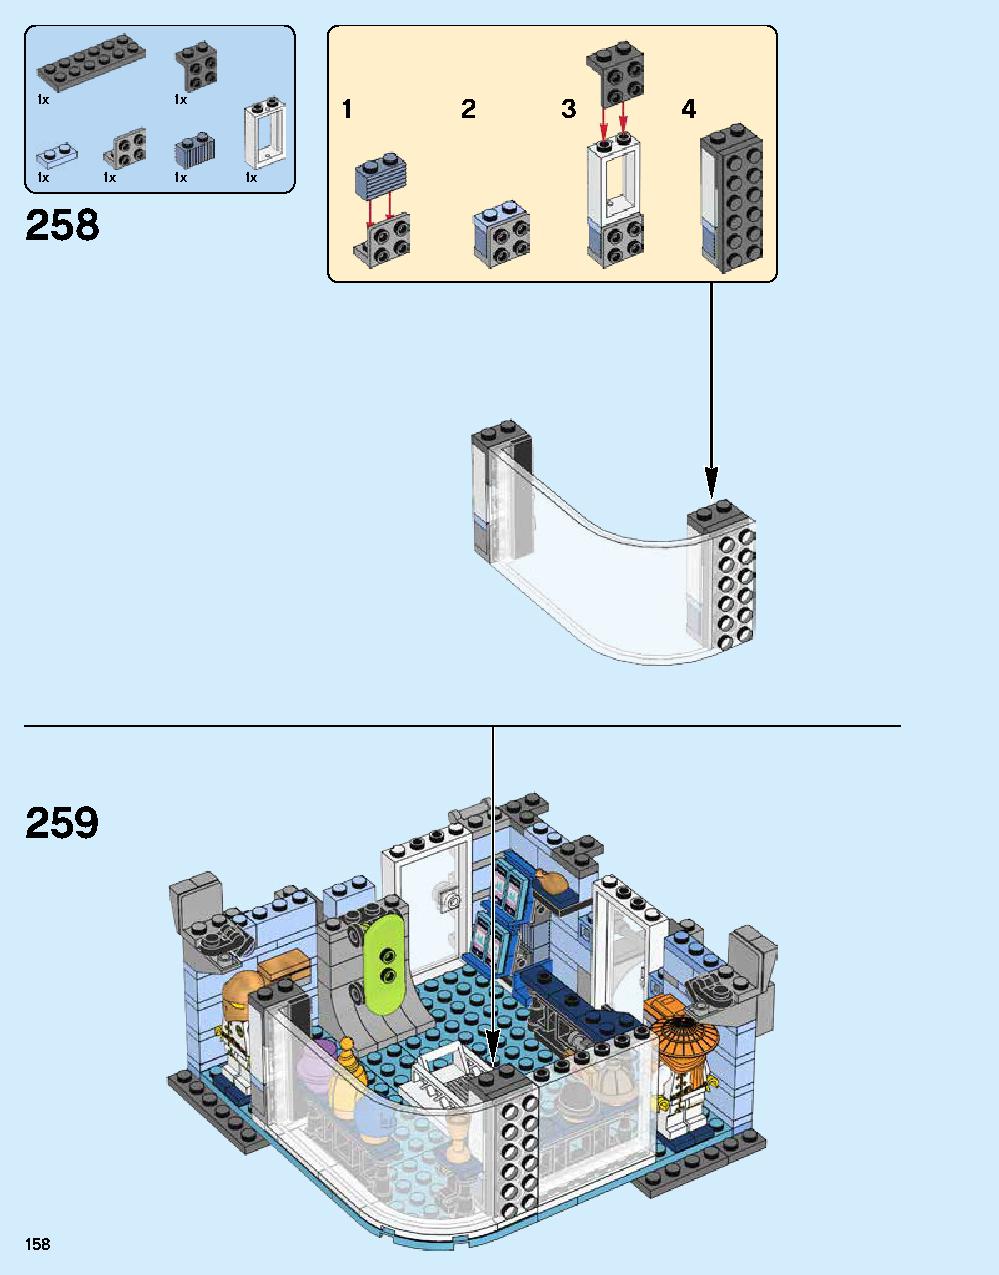 ニンジャゴー シティ 70620 レゴの商品情報 レゴの説明書・組立方法 158 page